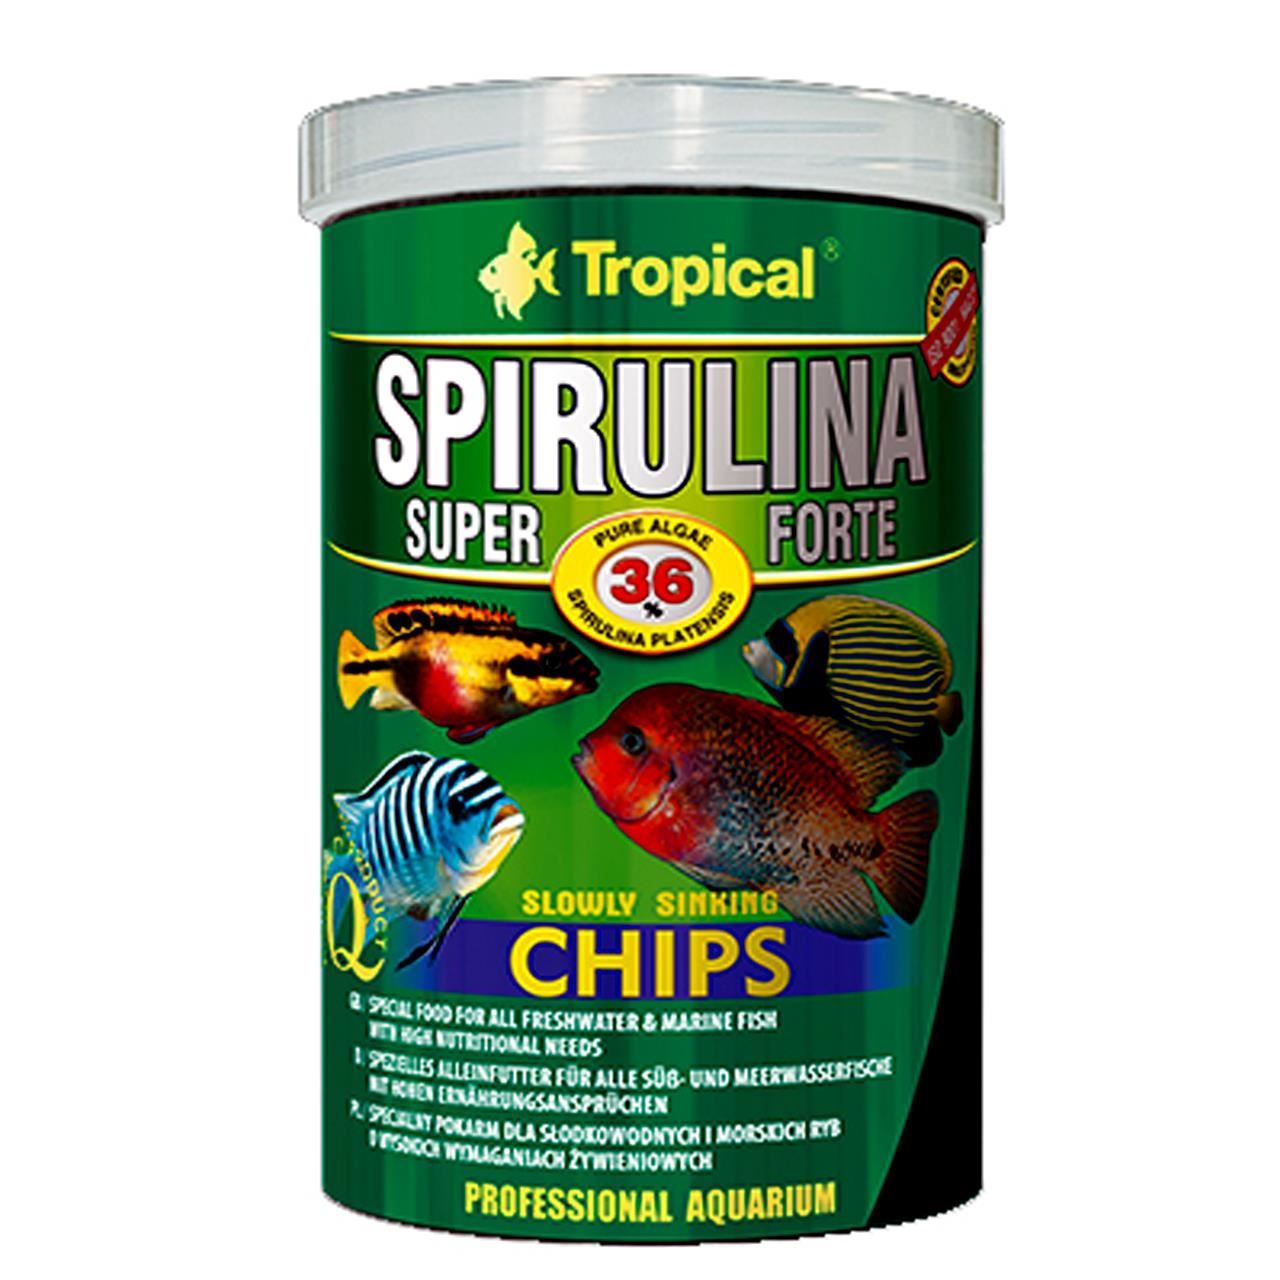 Tropical Super Spirulina Forte Chips 250 Ml/ 130 G